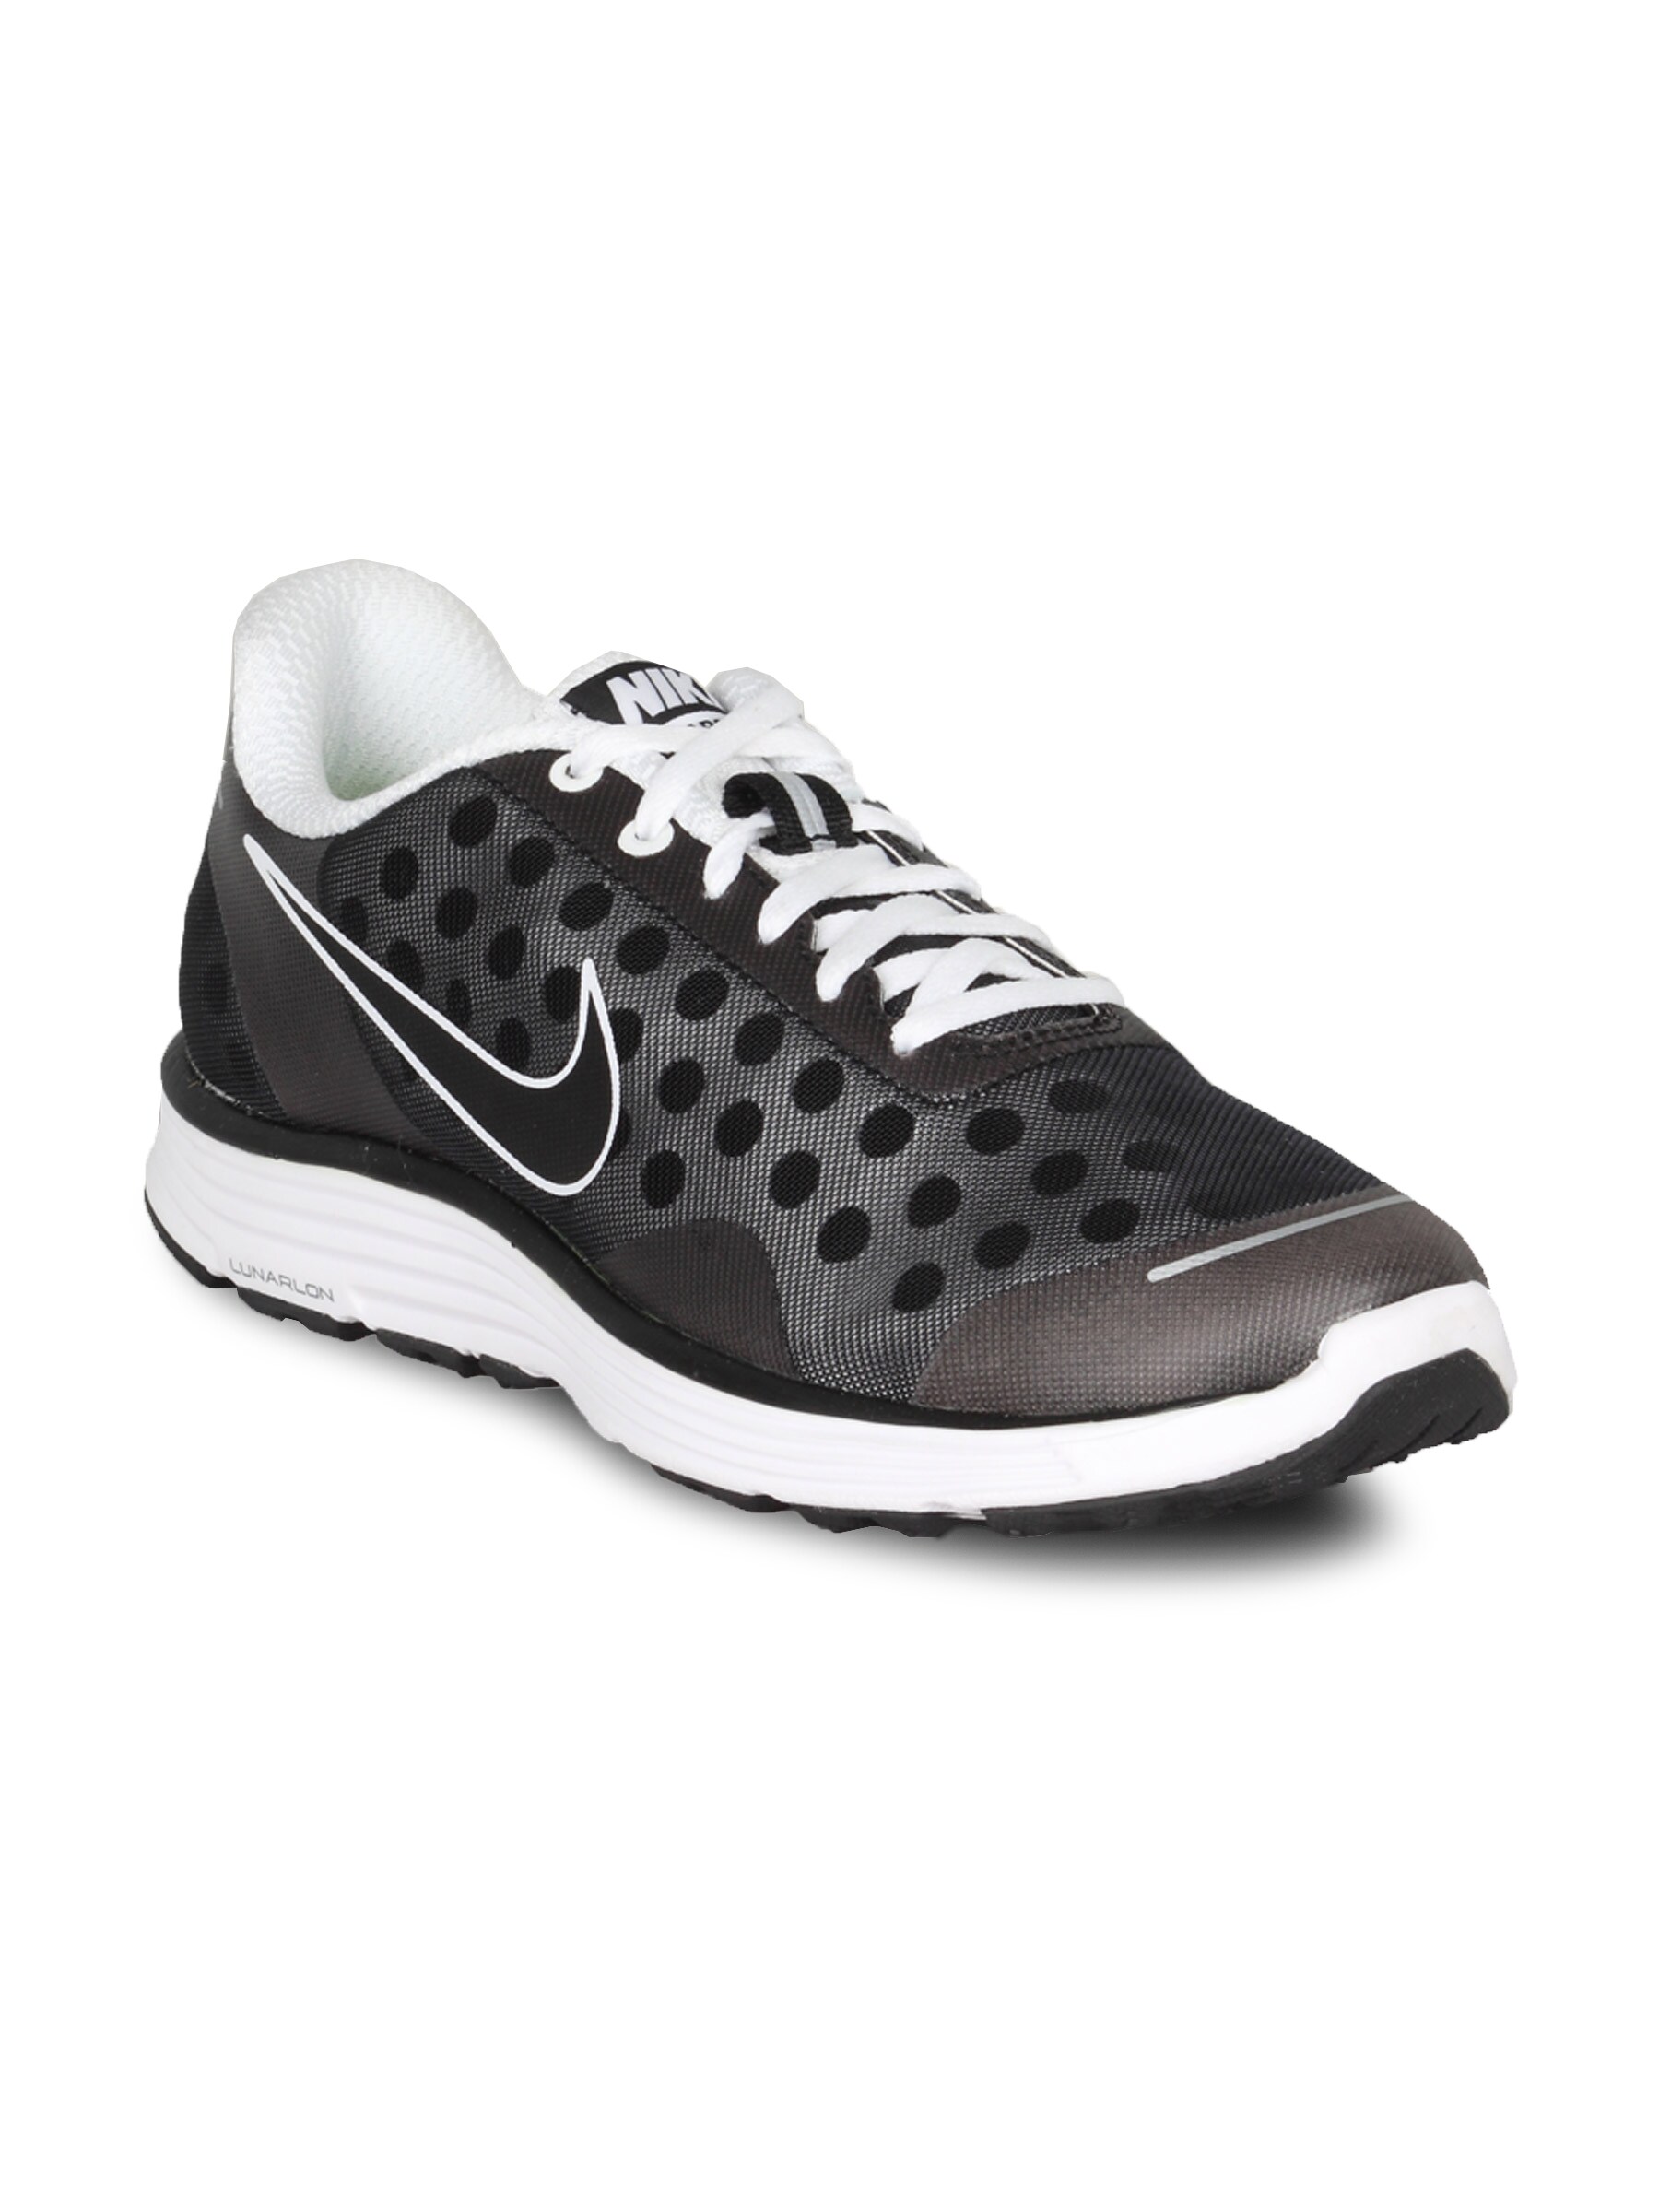 Nike Men's Lunar Swift 2 Black Shoe